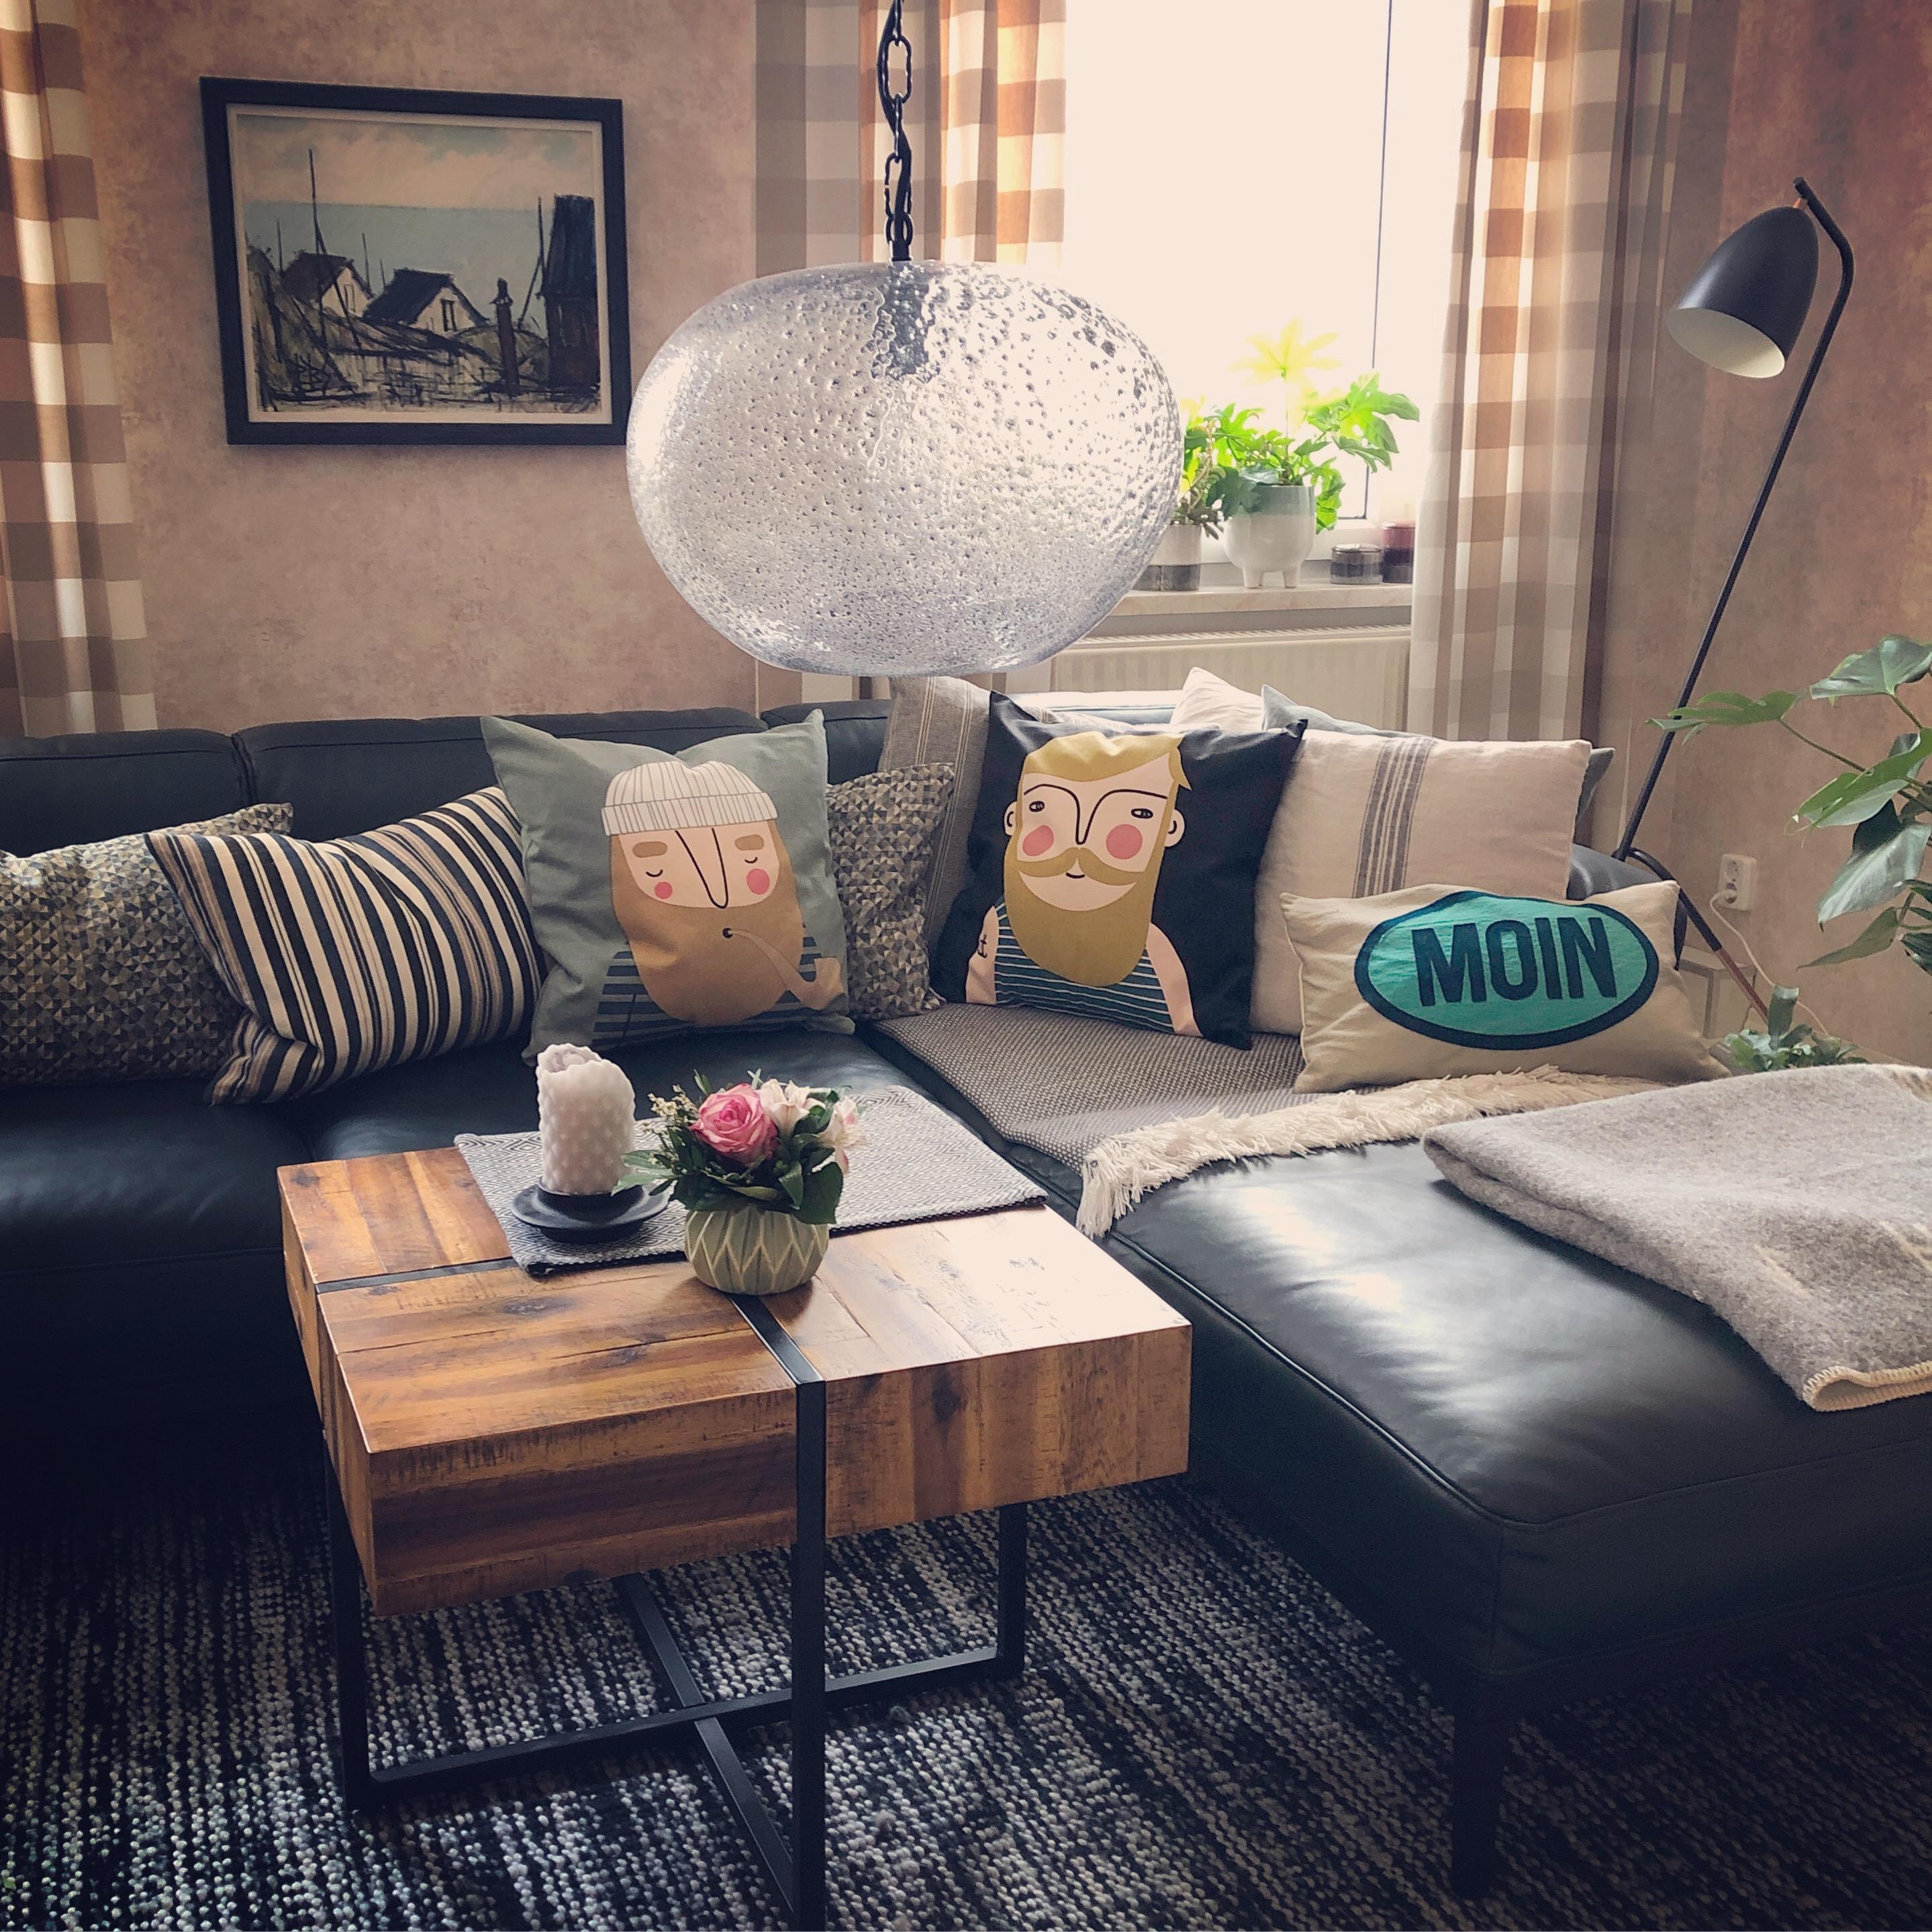 #wohnzimmer #tapete #couch #kissen #mitbewohner #ebbot & #frank #moin